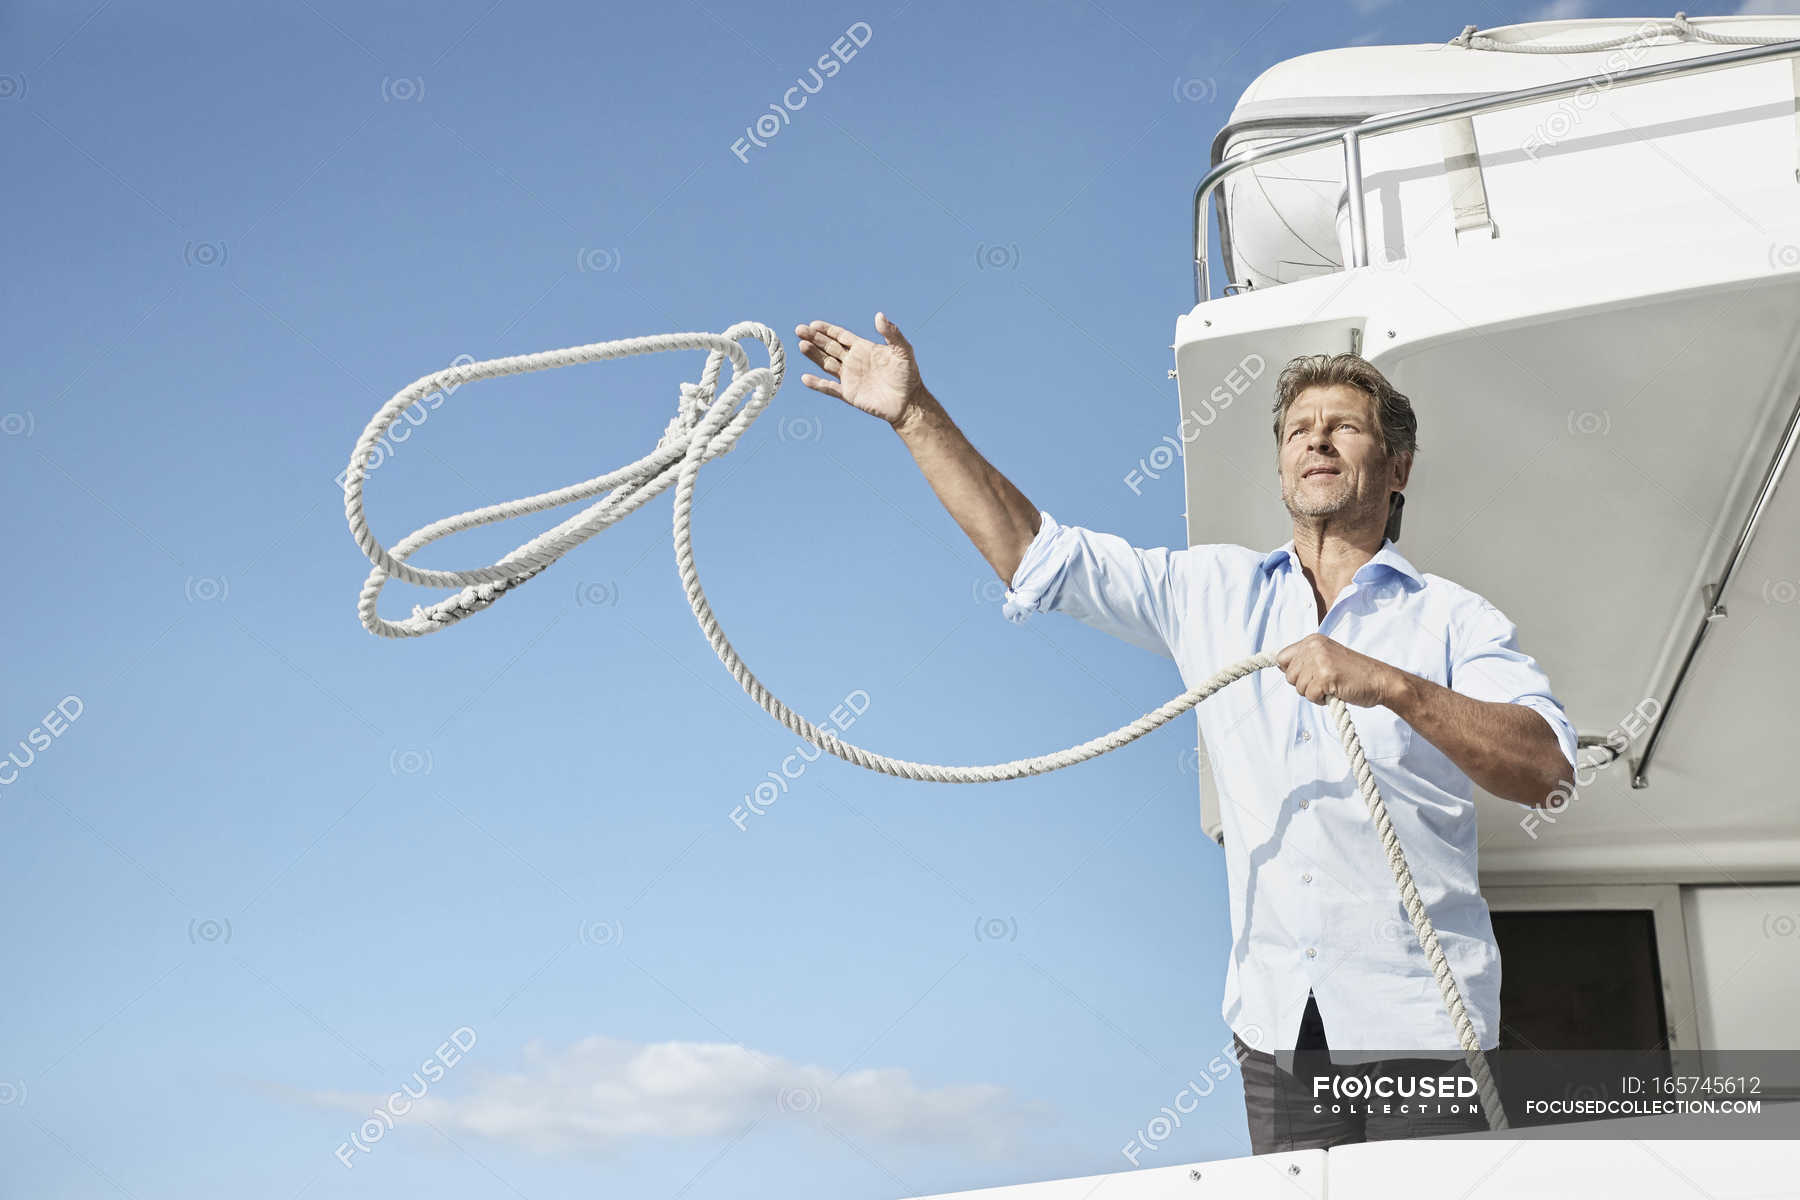 Человек на яхте бросает веревку — движение, судно - Stock Photo ...